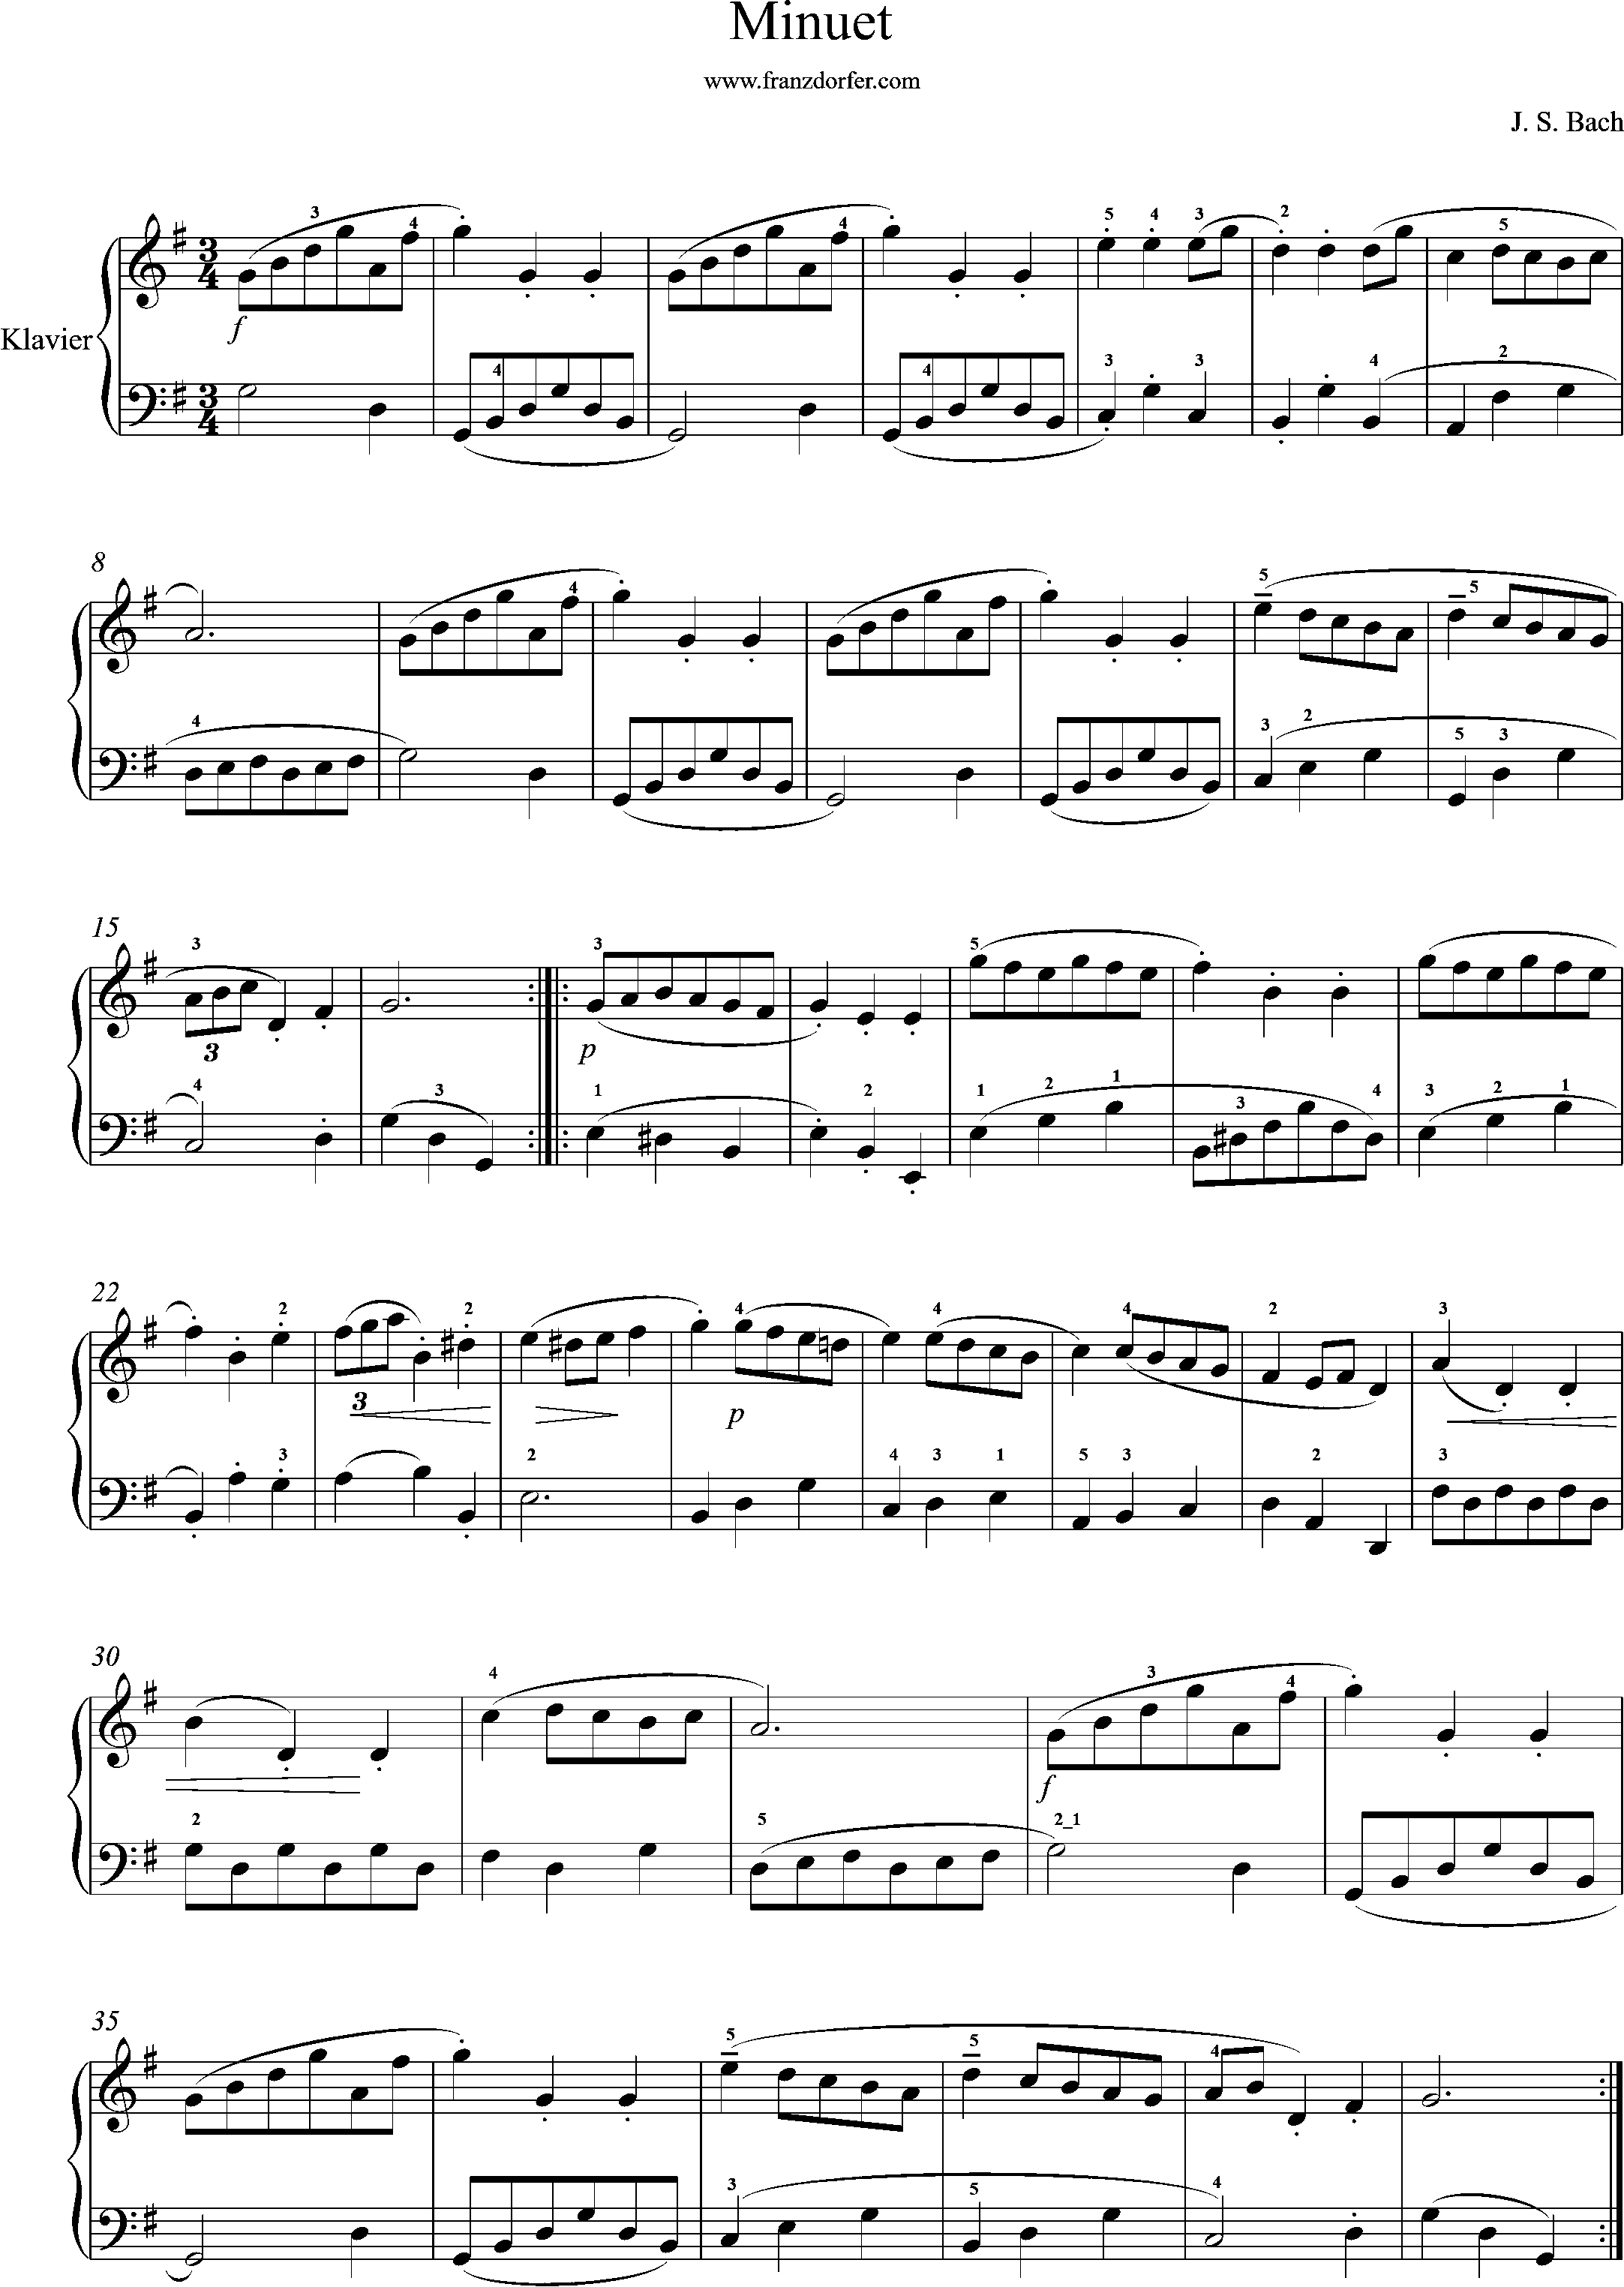 piano sheetmusic, Minuet in G. J. S. Bach